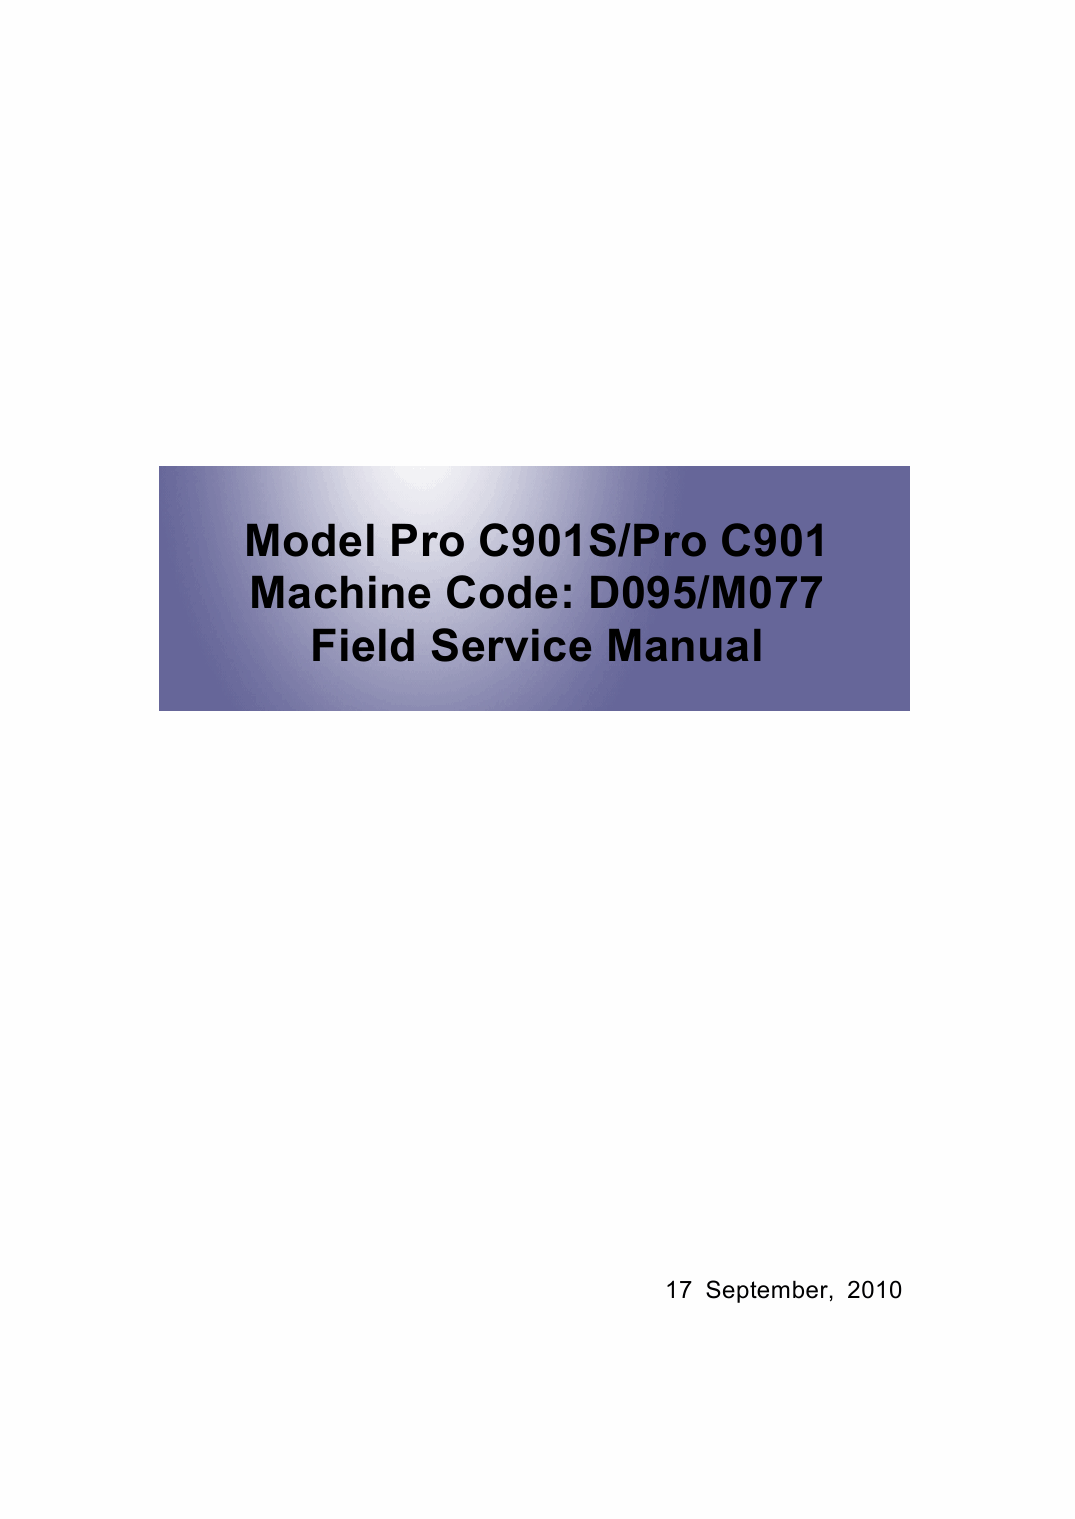 RICOH Aficio Pro-C901 C901S D095 M077 Service Manual-1